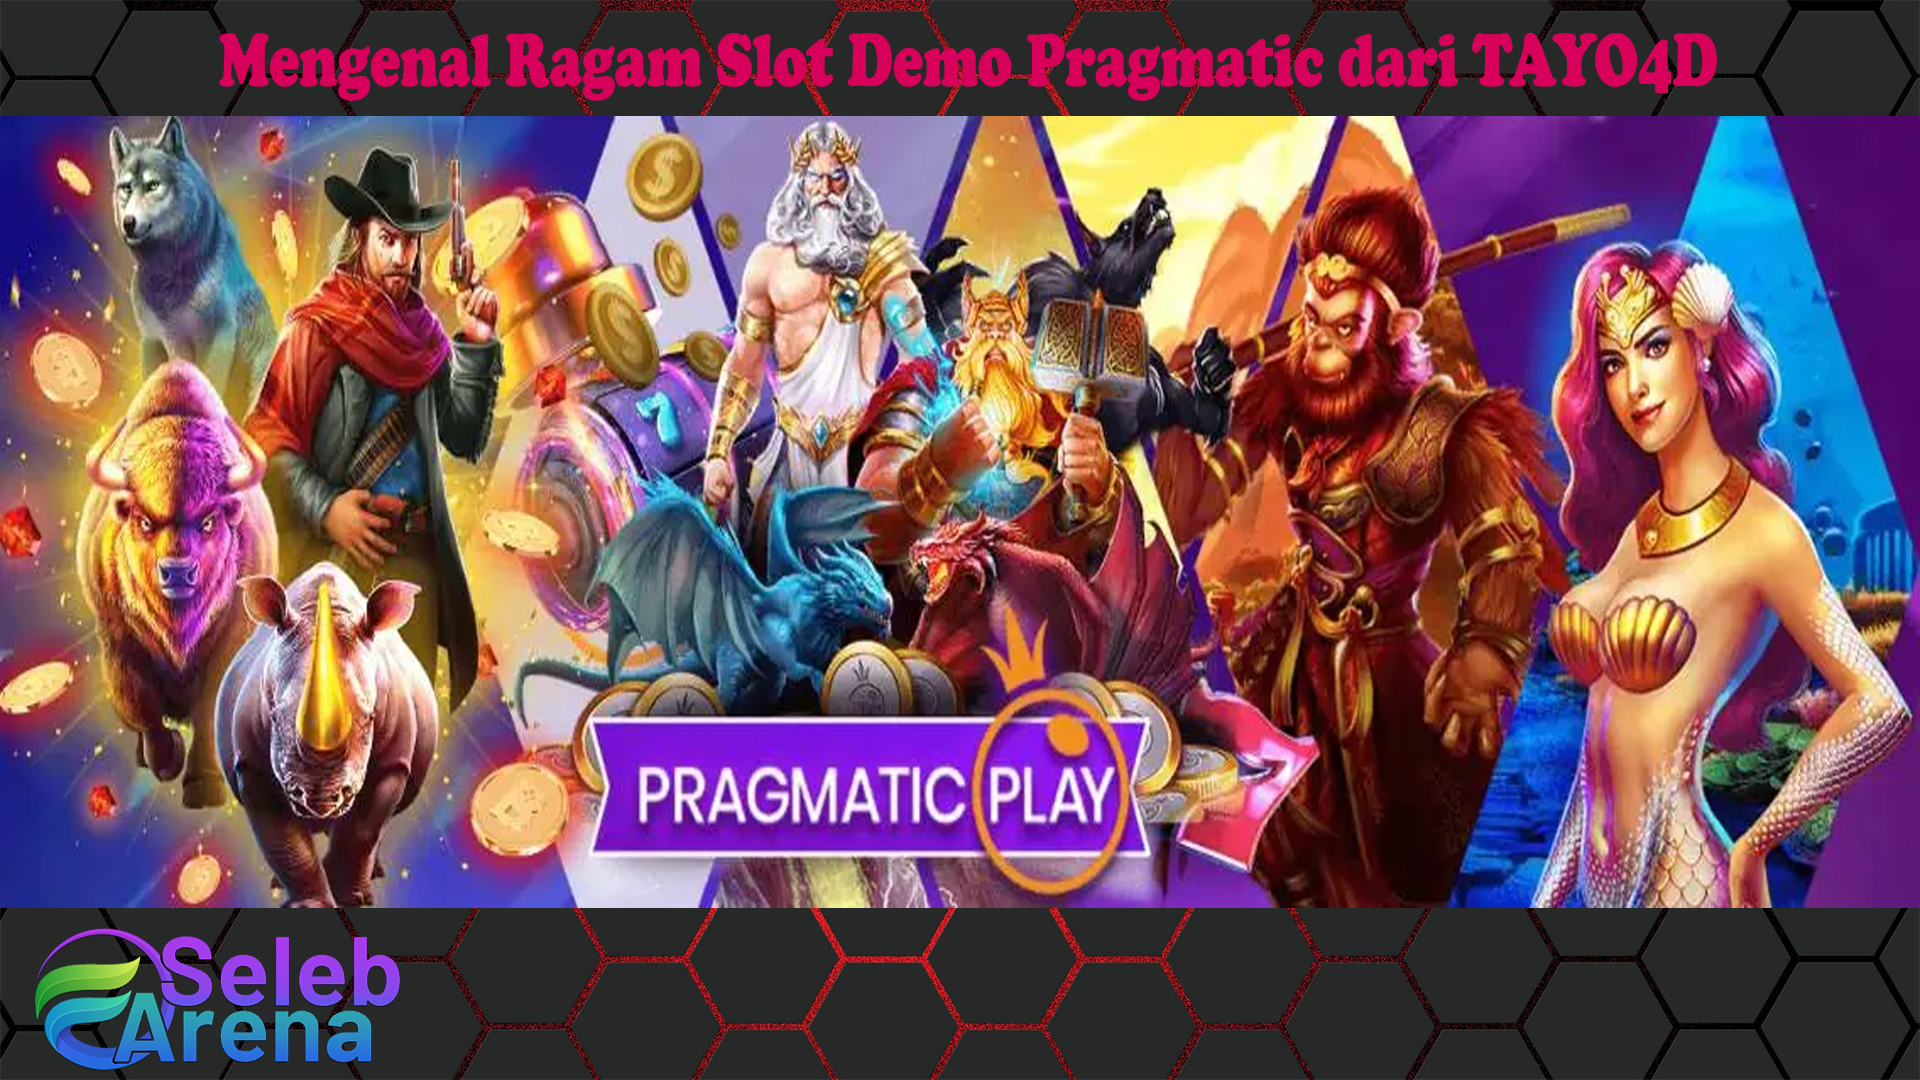 Mengenal Ragam Slot Demo Pragmatic dari TAYO4D